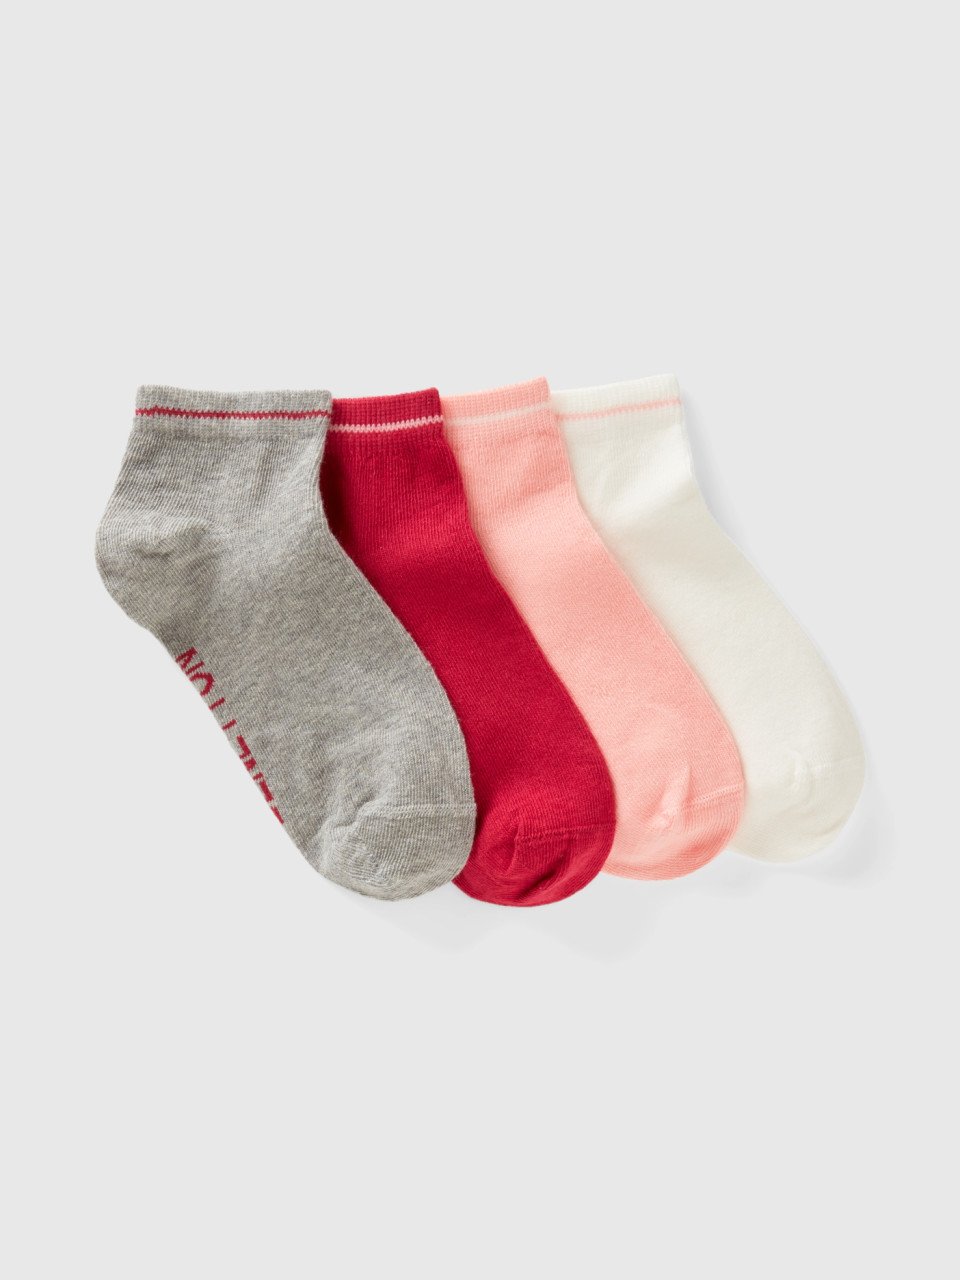 Benetton, Short Socks Set In Organic Cotton Blend, Multi-color, Kids